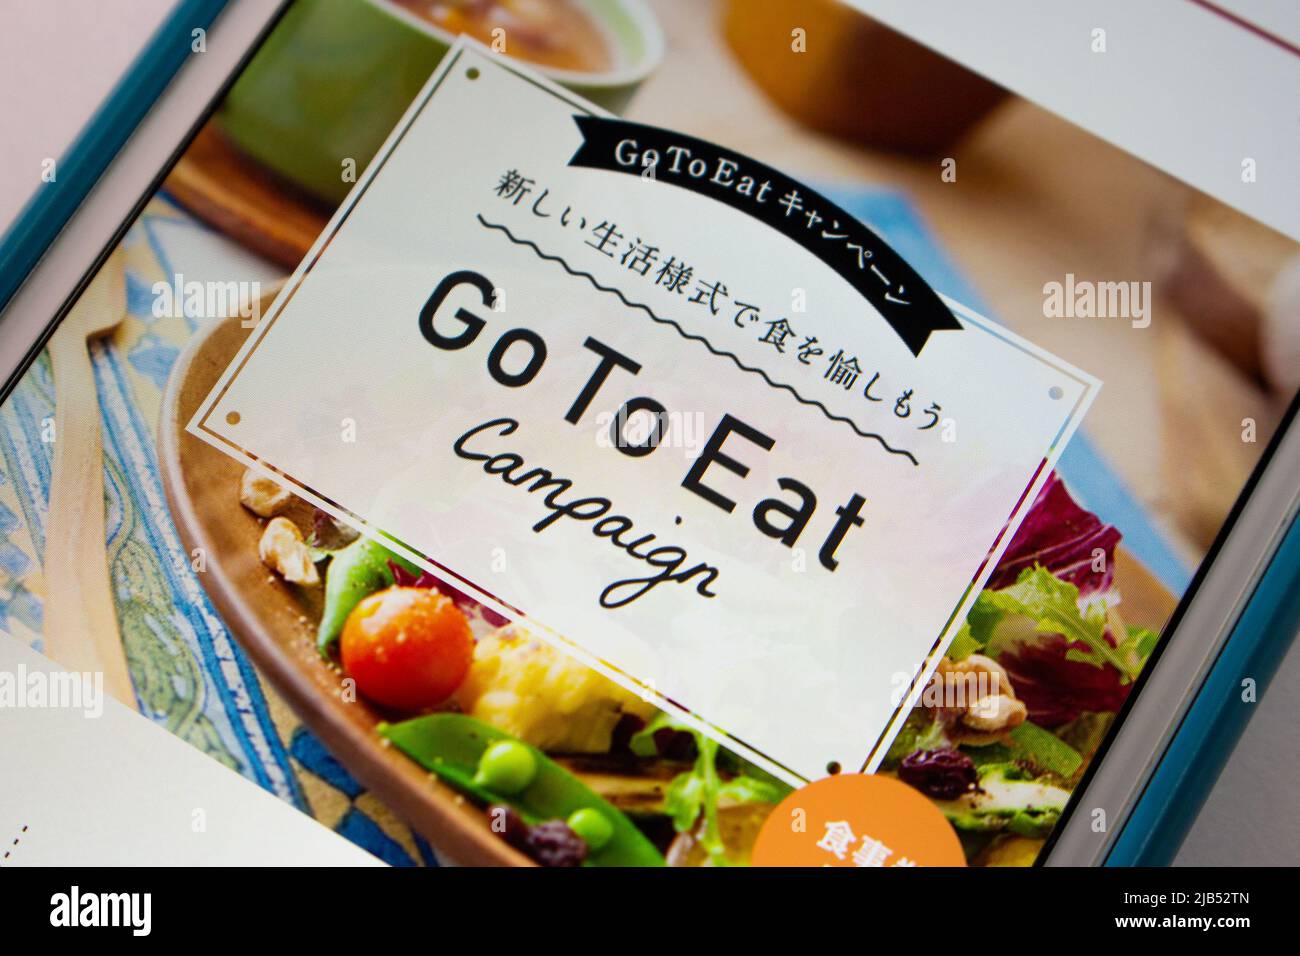 Kumamoto / JAPON - octobre 12 2020 : Fermer le site Web de la campagne Go to Eat du Japon sur iPhone. Traduction : appréciez la nourriture avec un style de vie nouveau-normal Banque D'Images